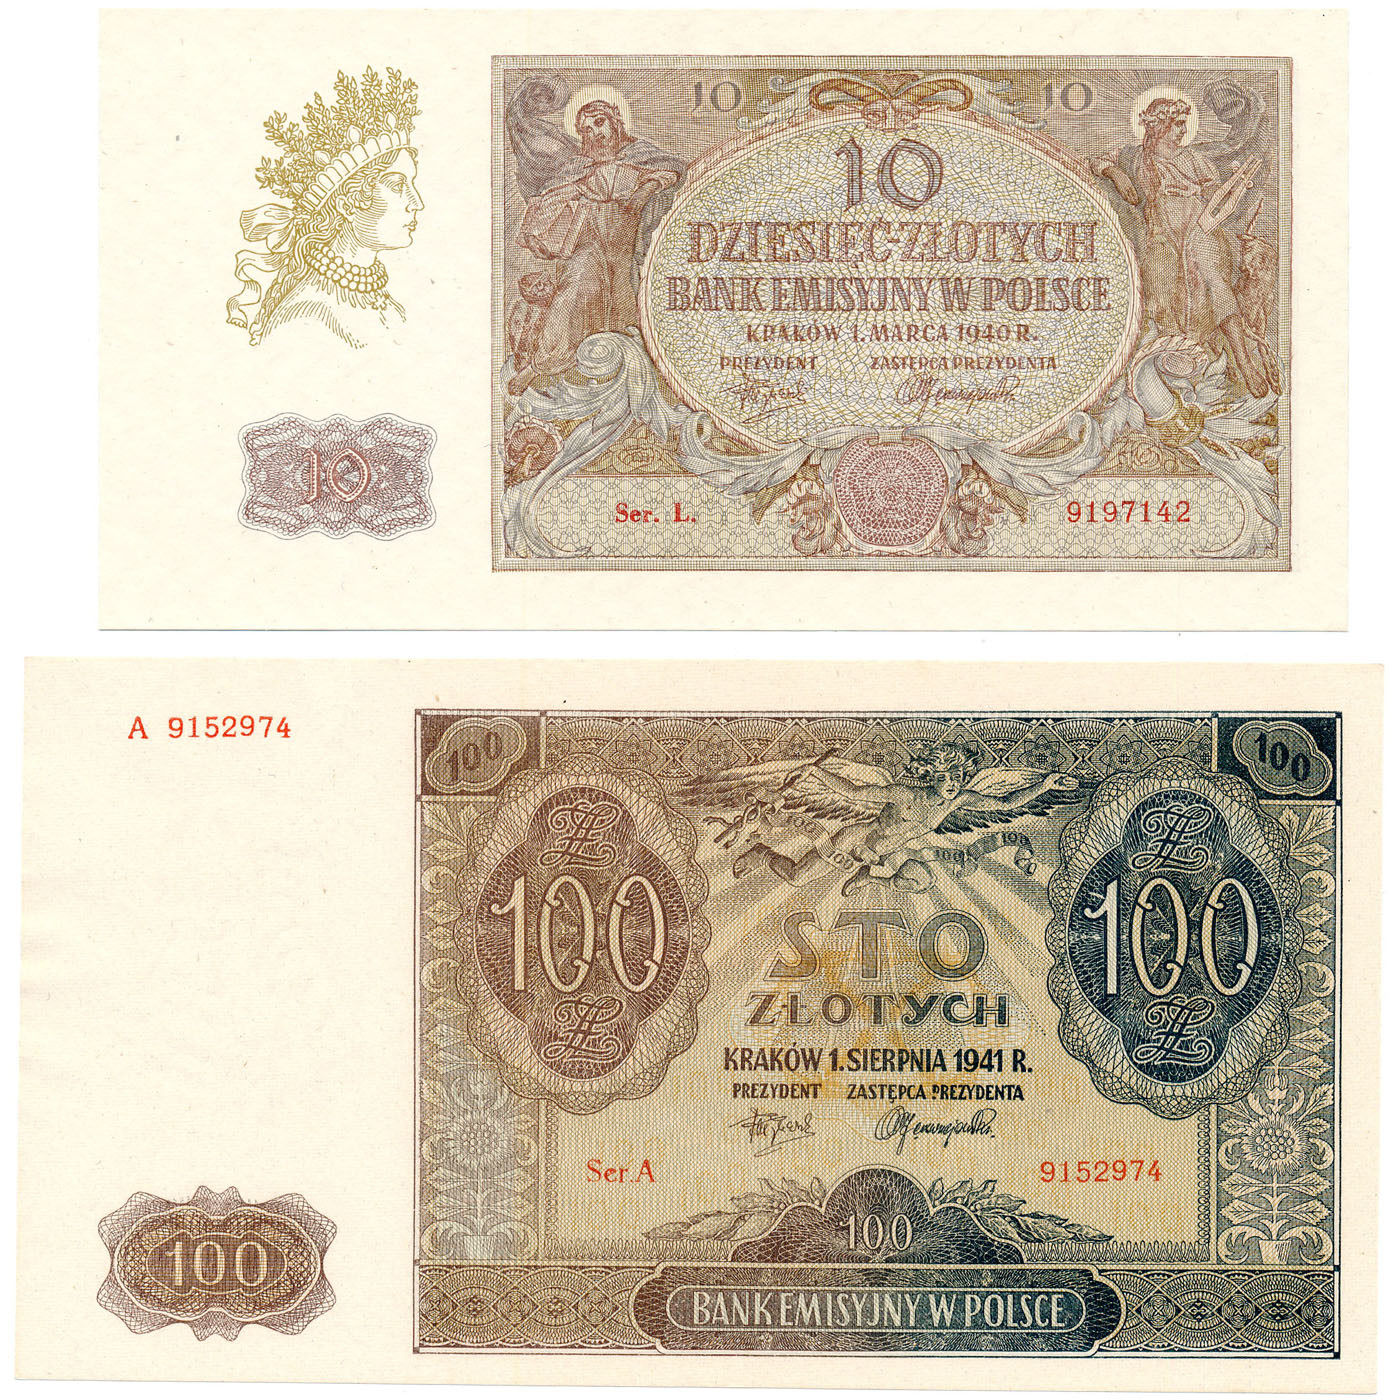 10 złotych 1940 seria L, 100 złotych 1941 seria A